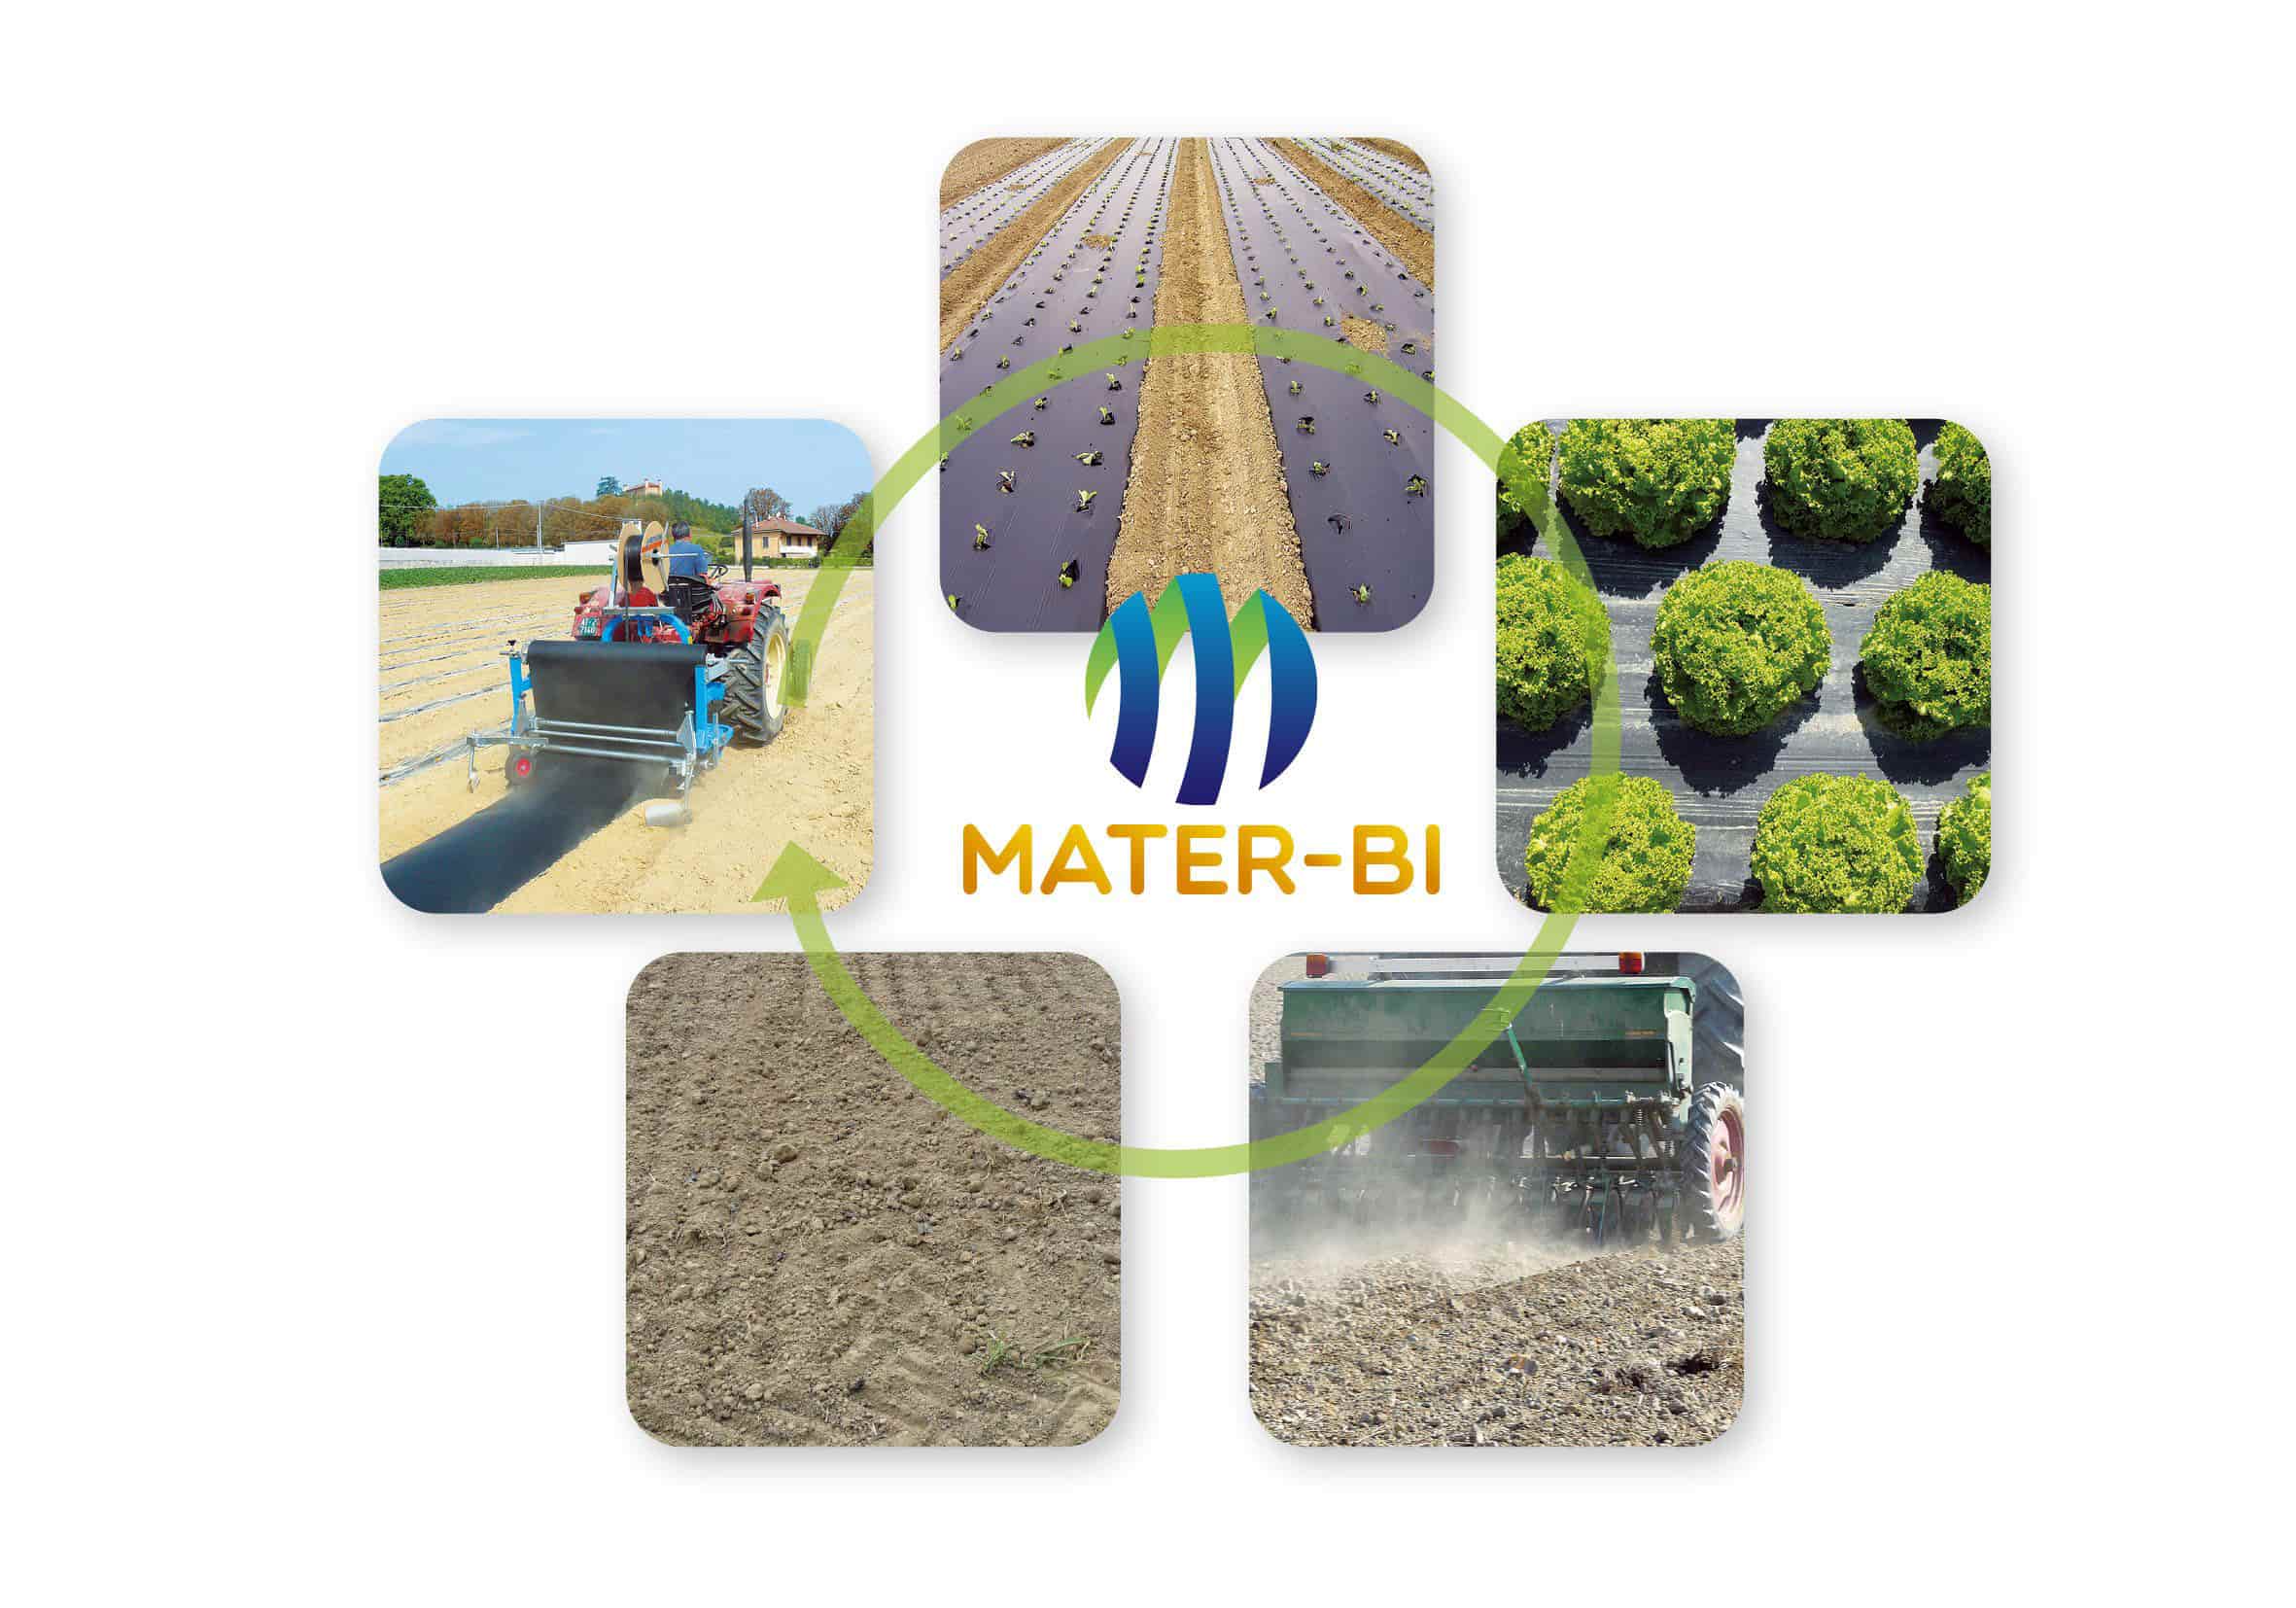 El Mater-Bi es un bioplástico para acolchado biodegradable en el suelo